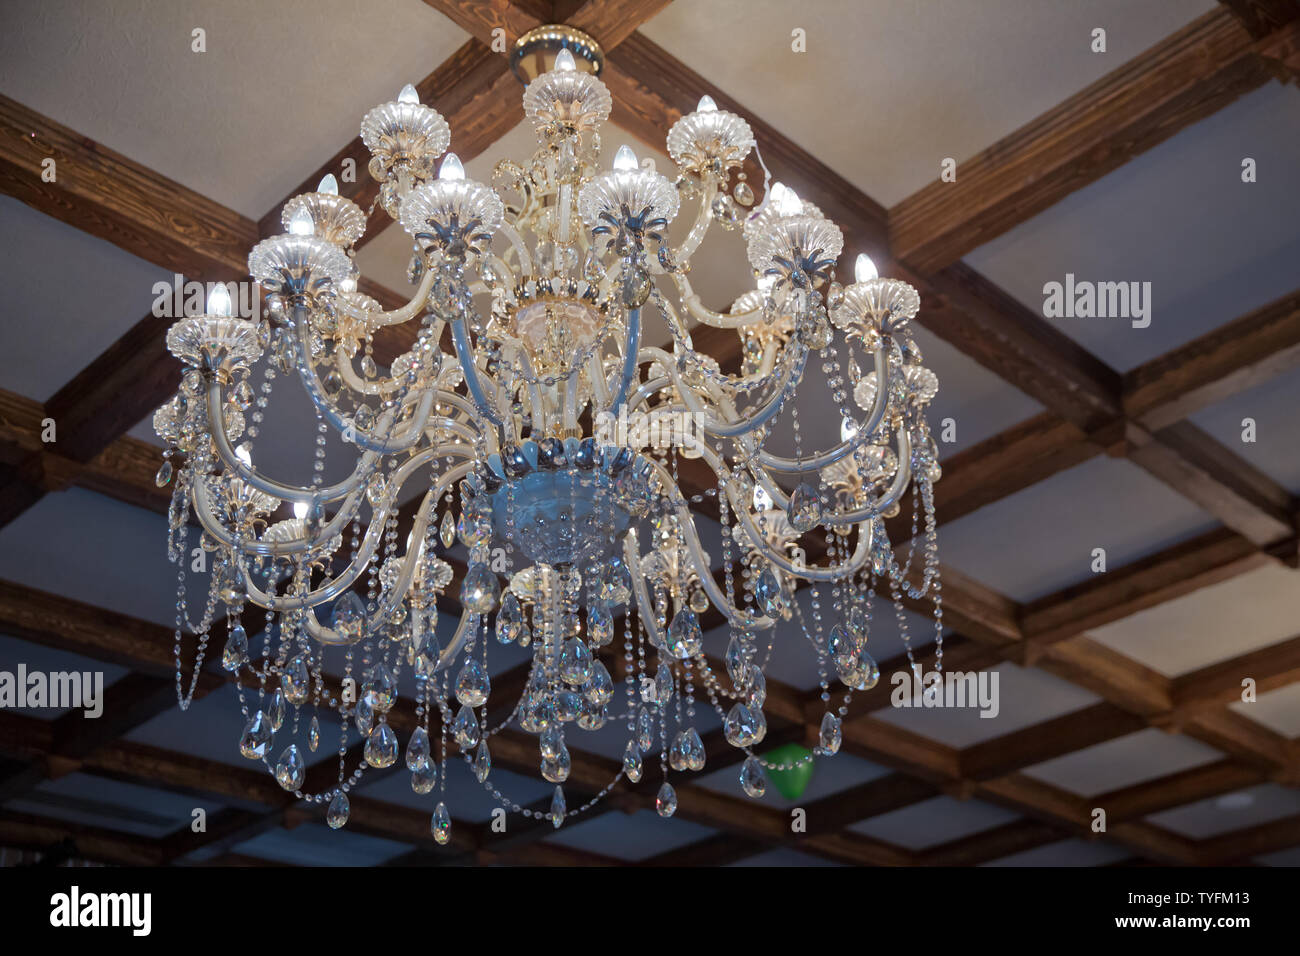 Luxe magnifique lustre lampe chandelier hanging cher sous plafond . La lampe  dans la belle chambre lustre en laiton .avec crystal. Chandelie Photo Stock  - Alamy